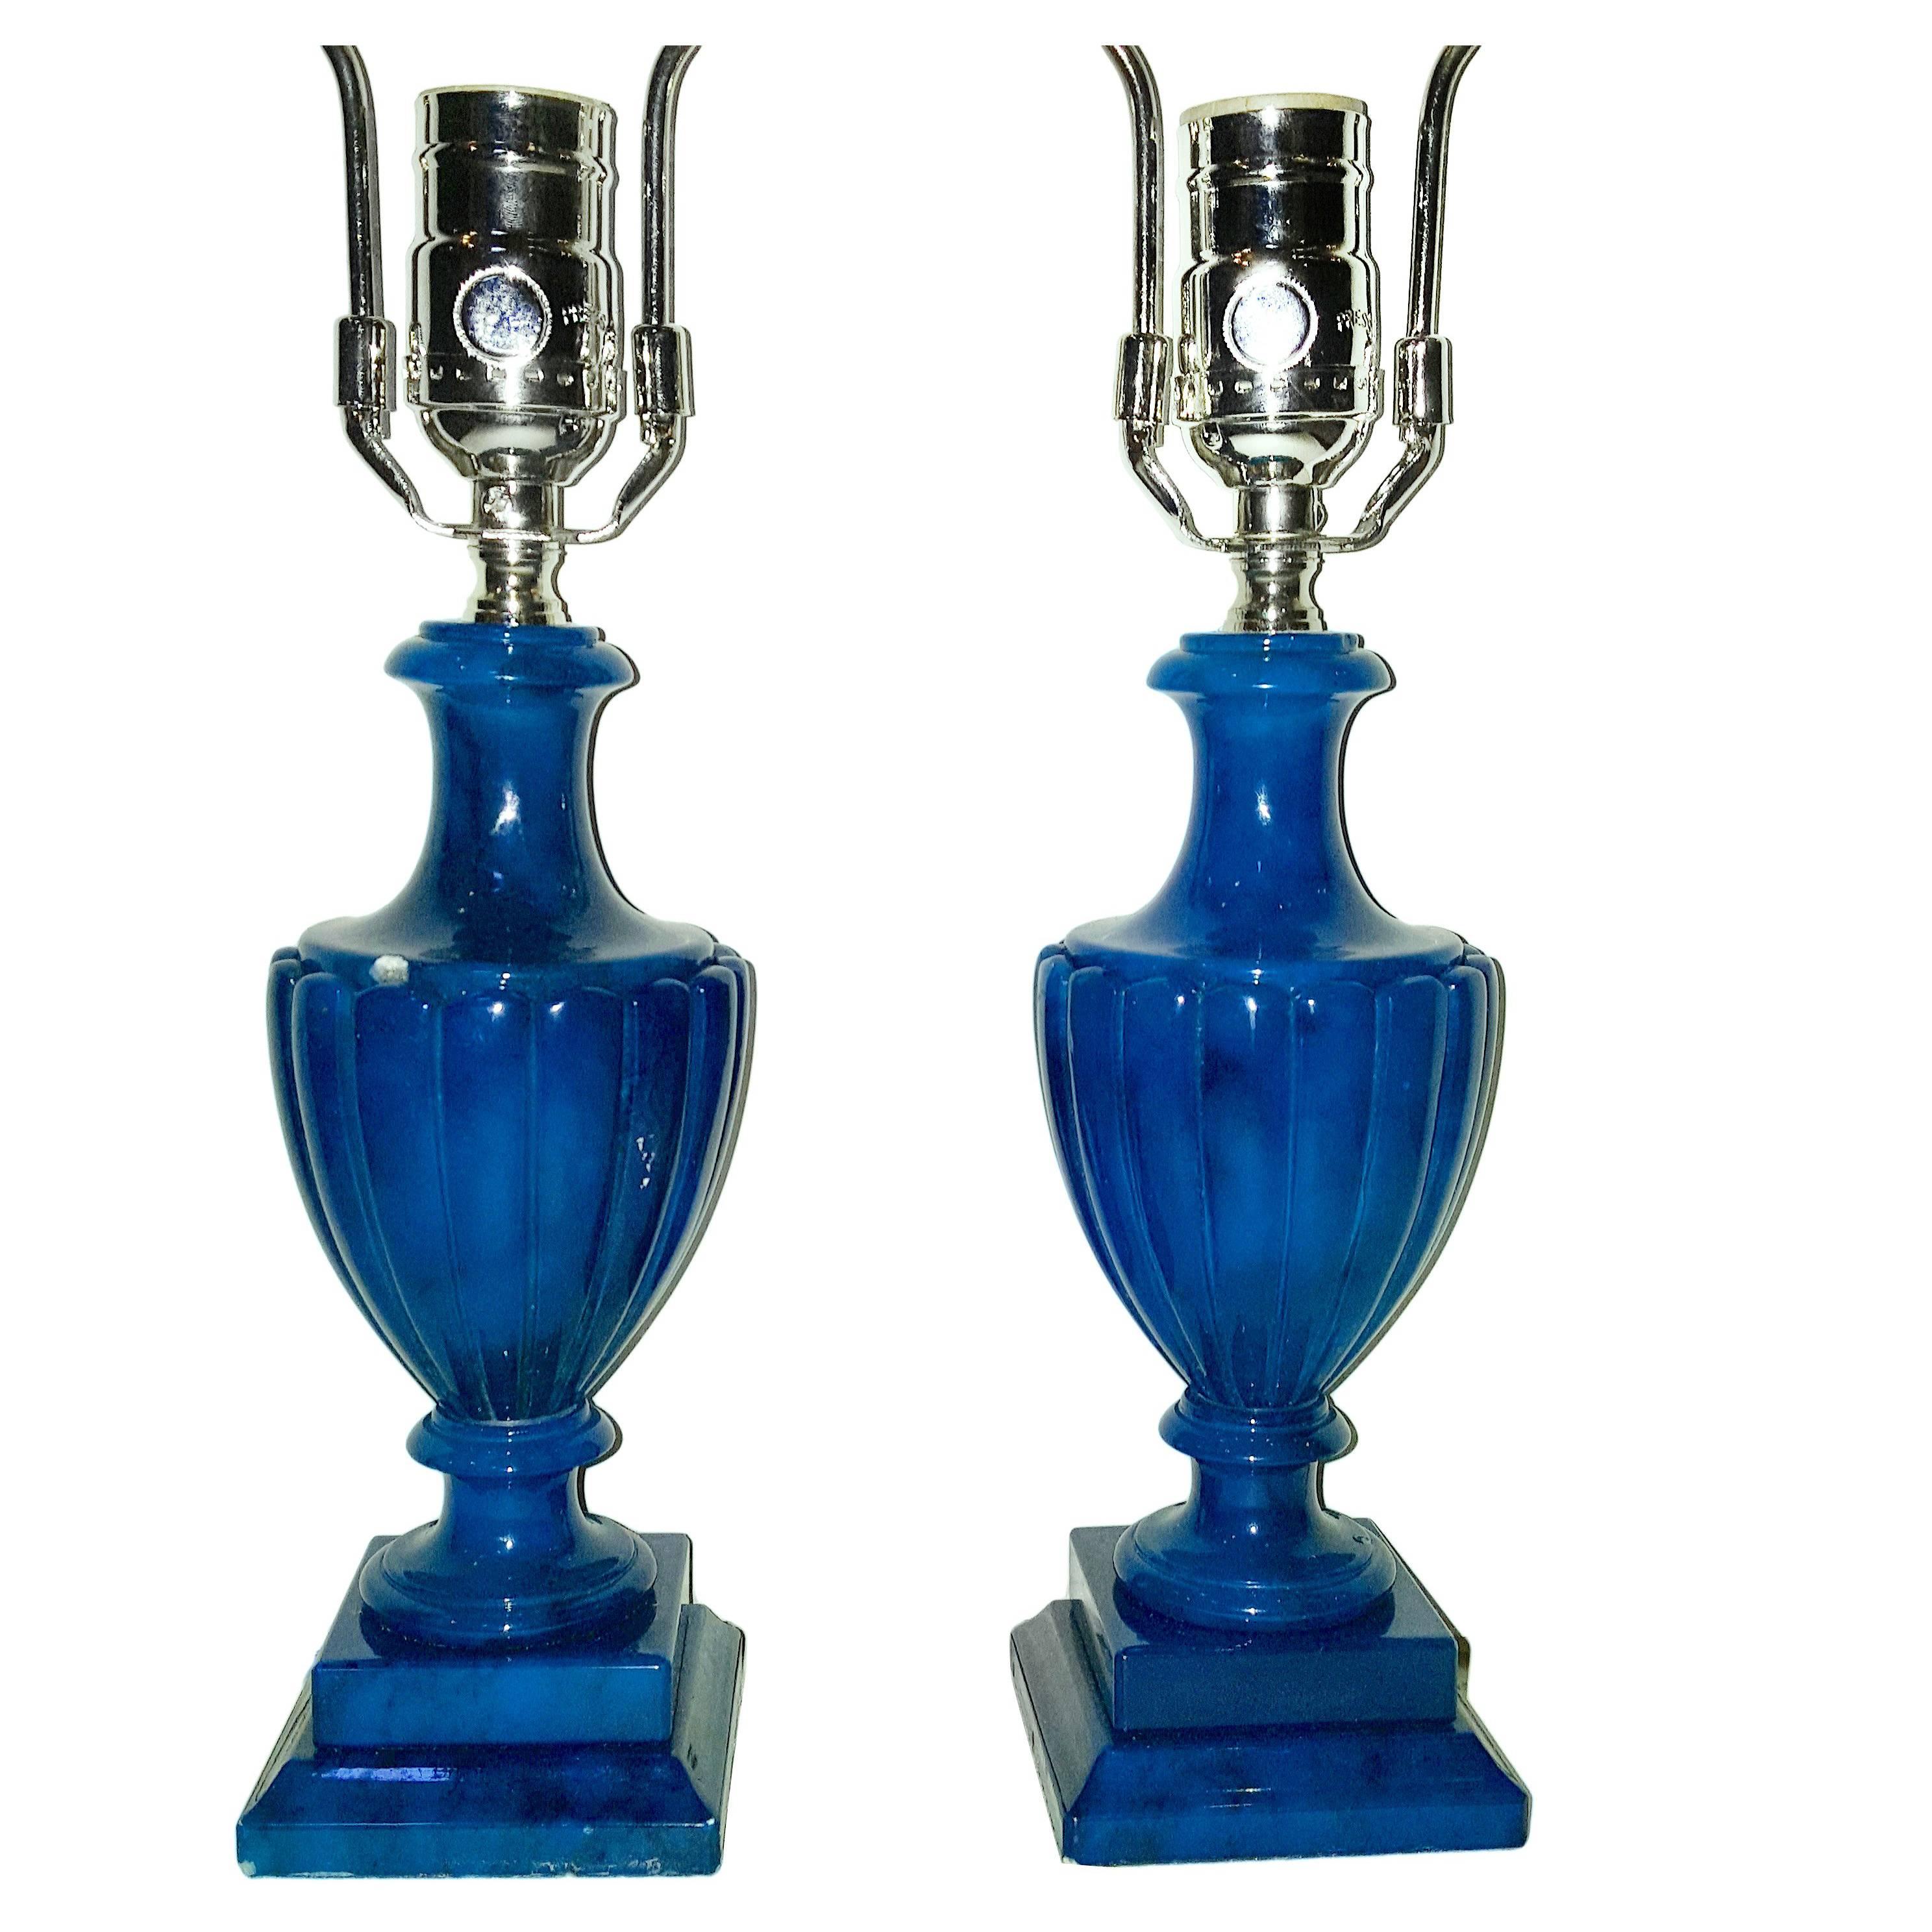 Zwei italienische blaue Alabaster-Tischlampen aus den 1920er Jahren mit urnenförmigem Korpus und Sockeln.